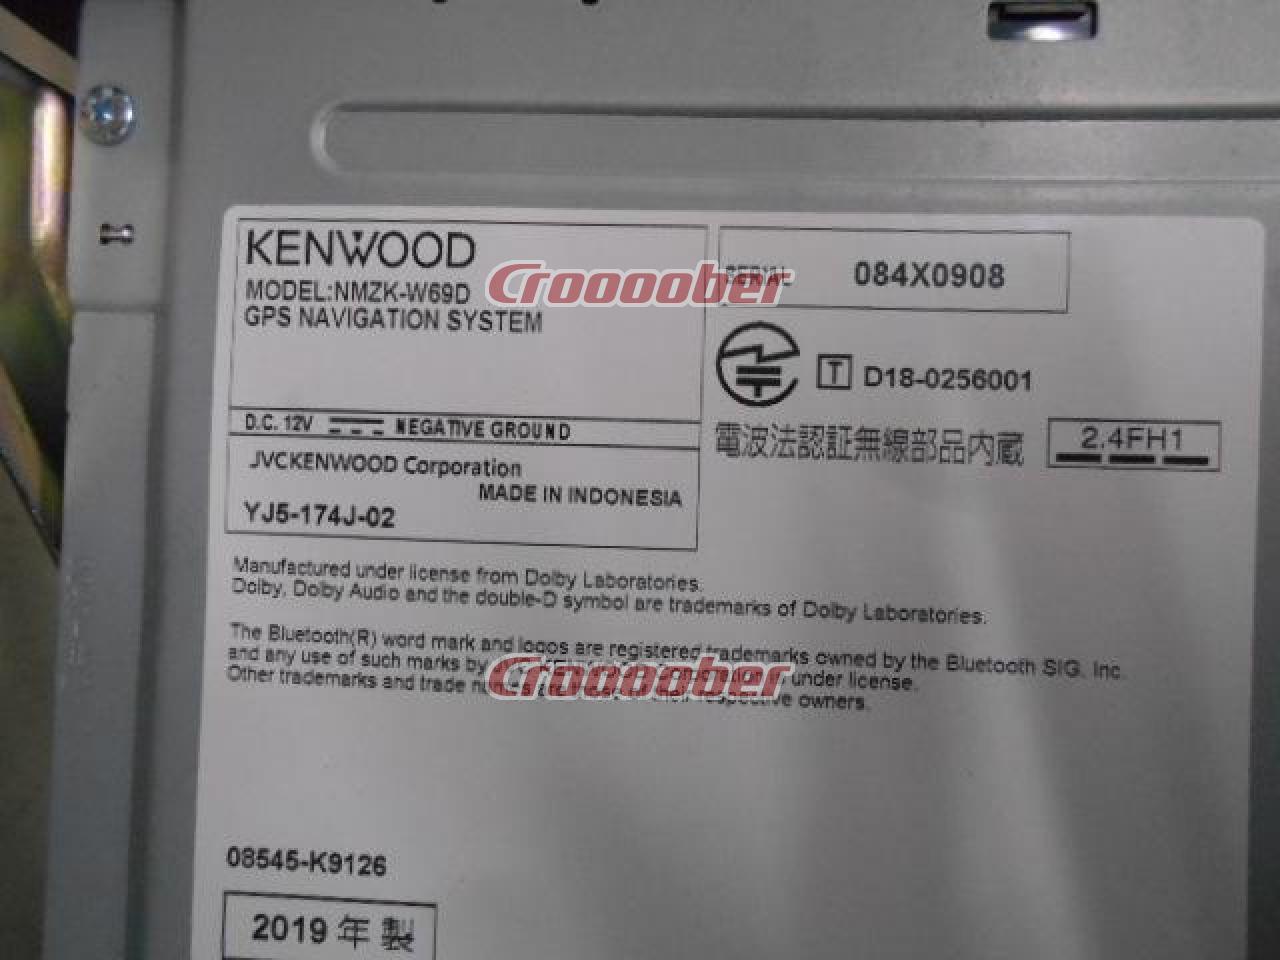 ダイハツ NMZK-W68D 地デジ/DVD/CD/SD/Bluetooth対応 | カーナビ(地